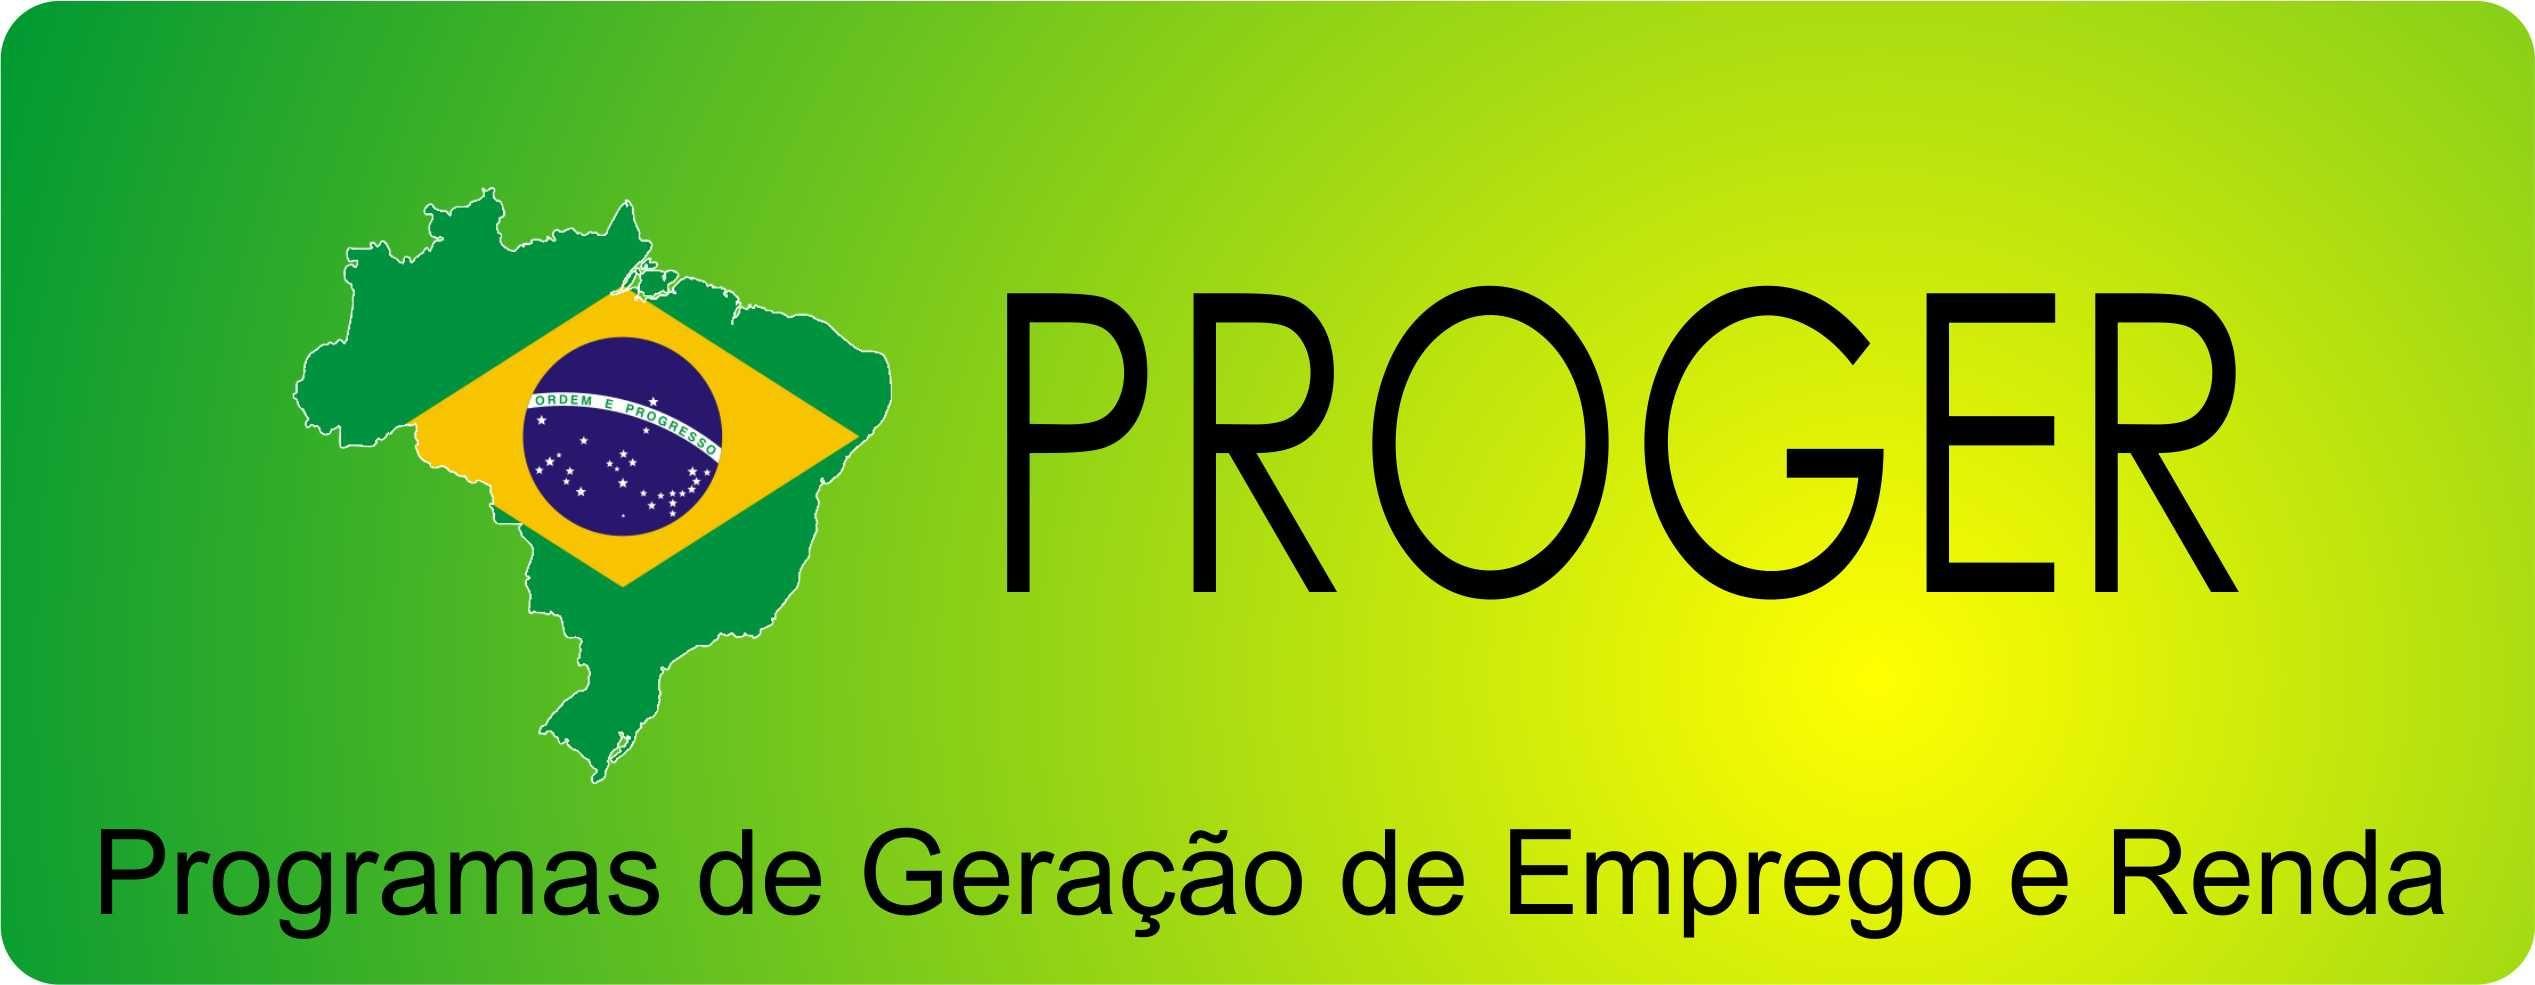 Proger Logo - Proger